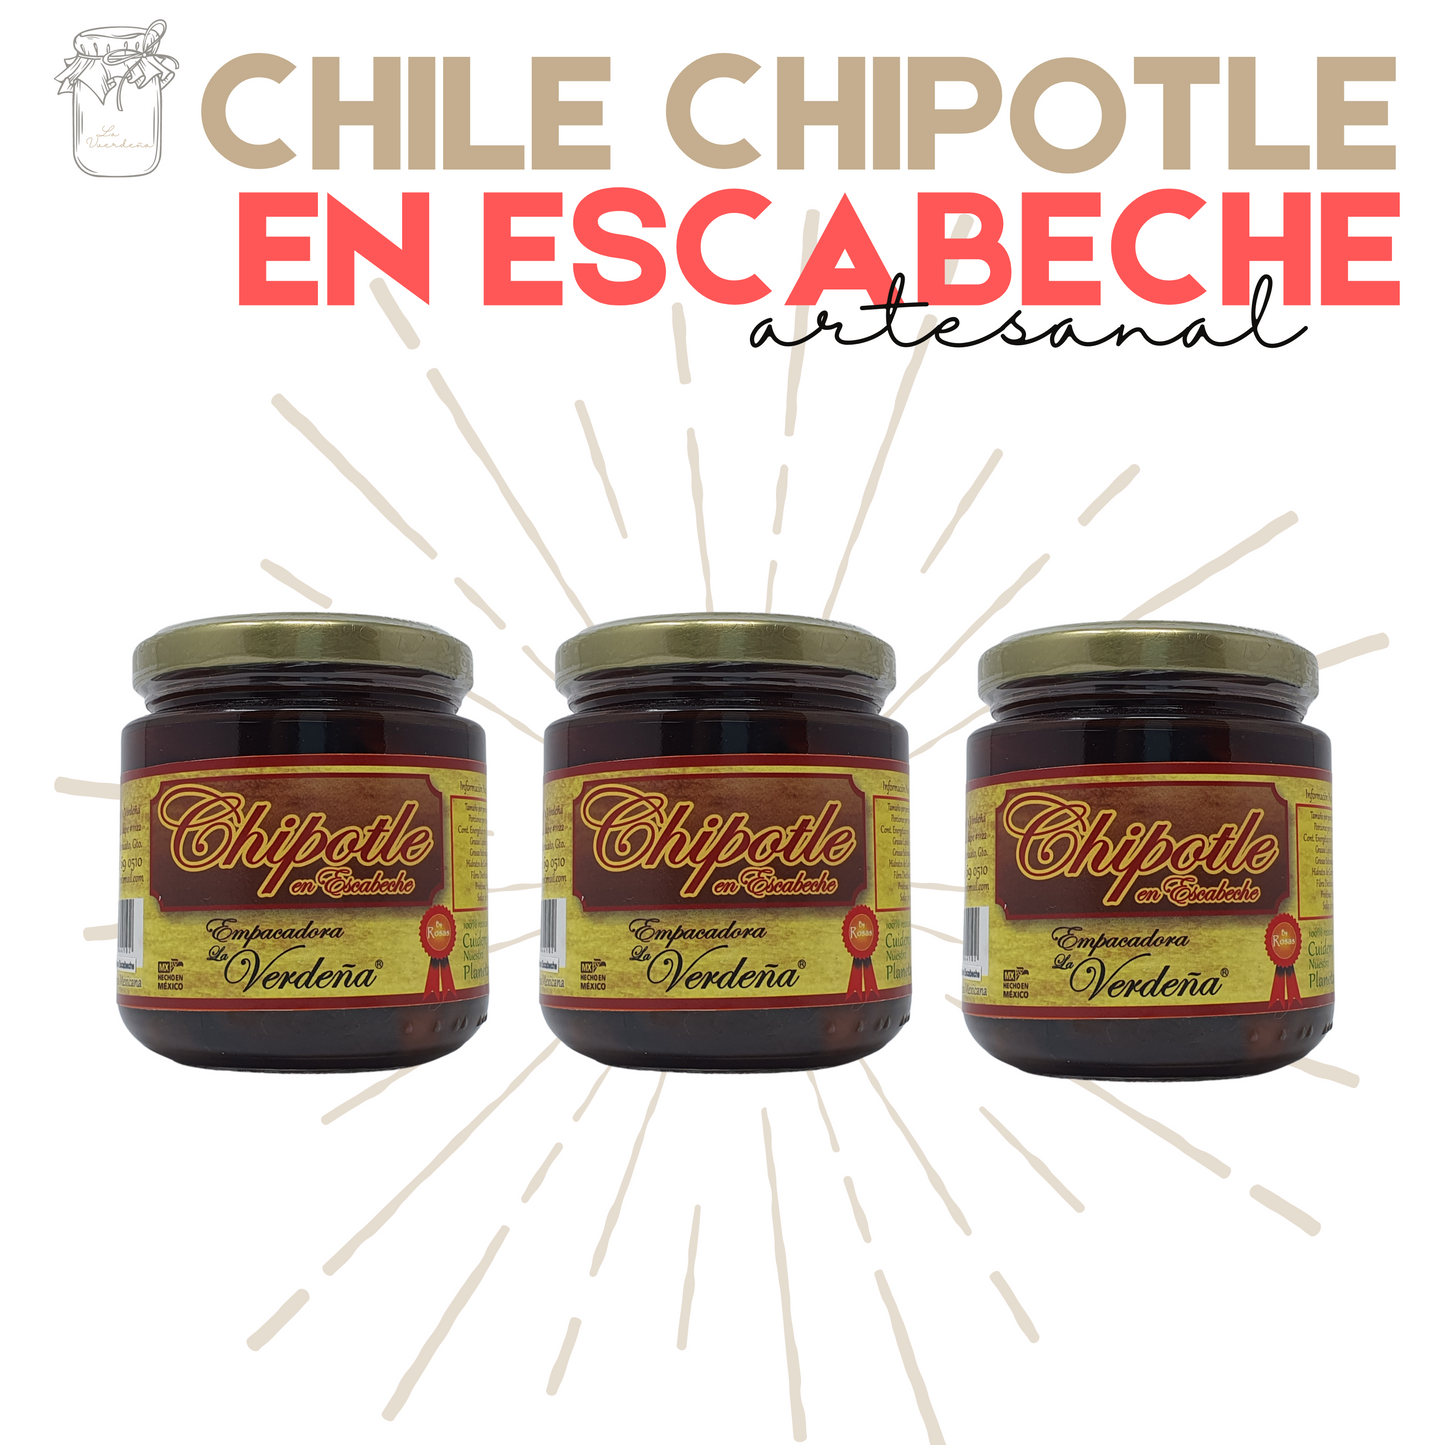 Chipotle en Escabeche | Chile Chipotle | Gourmet | Artesanal | 3 frascos | Mexpofood